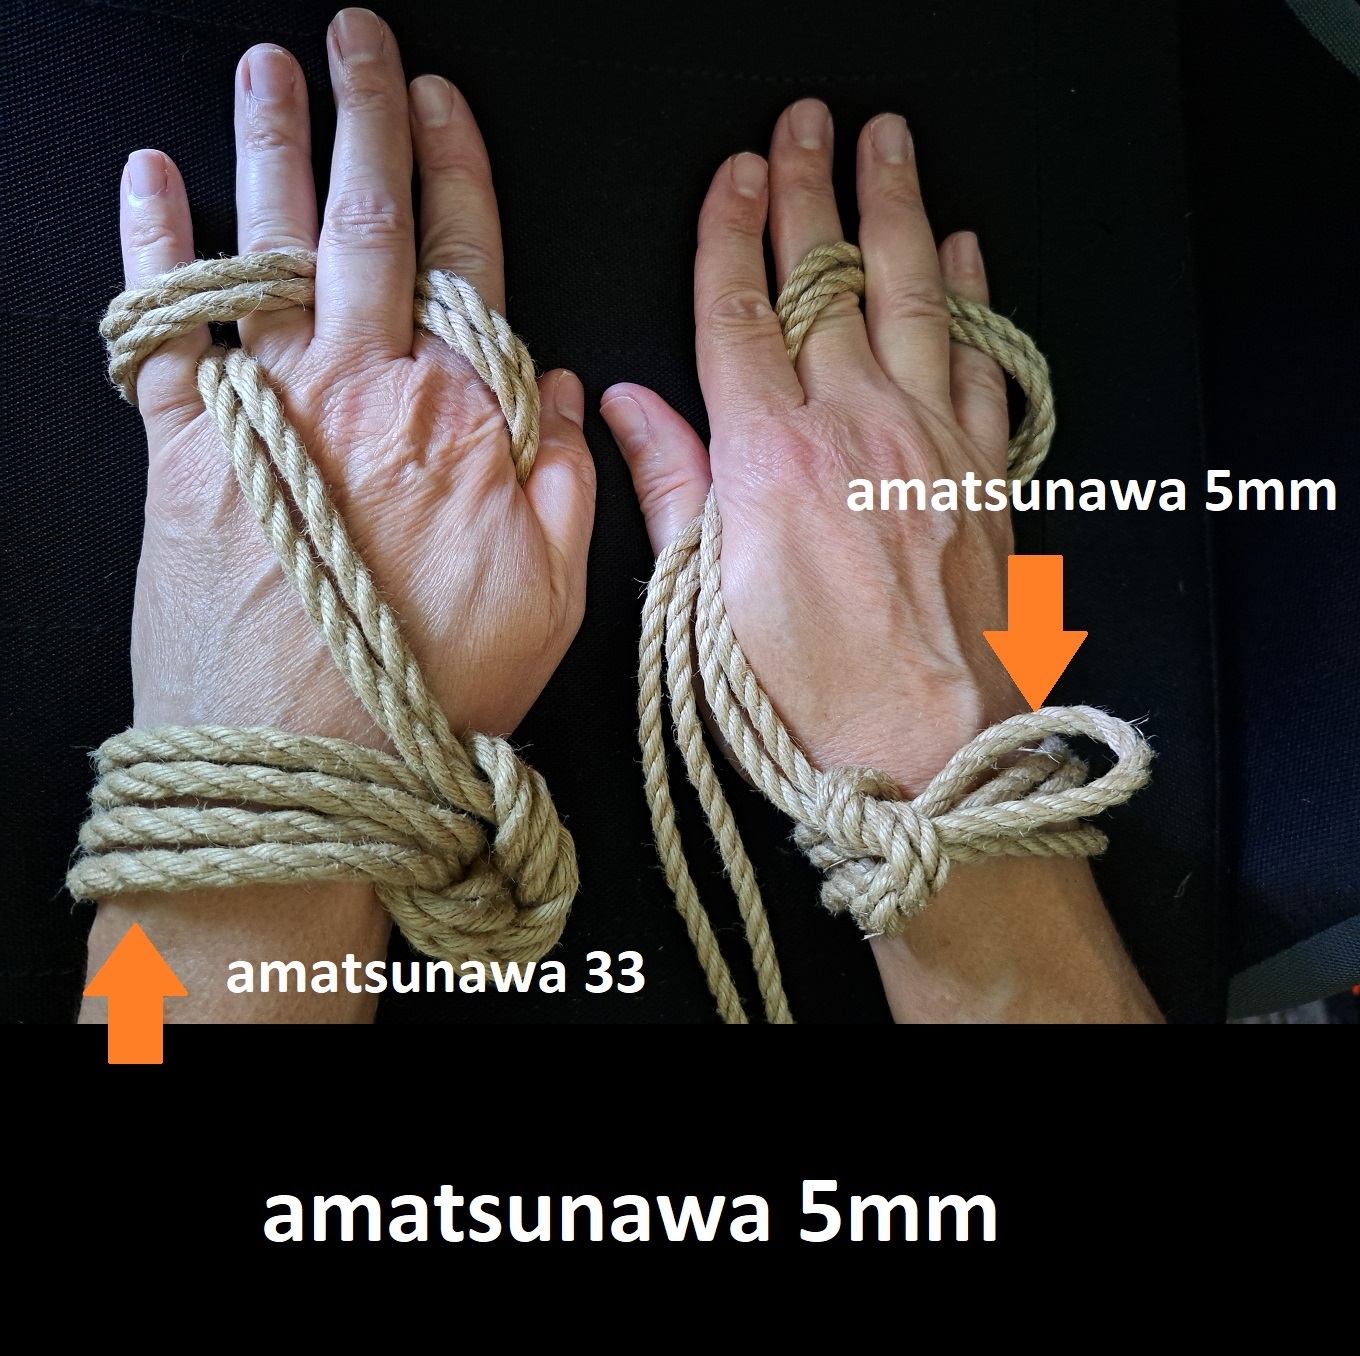 Amatsunawa 5mm